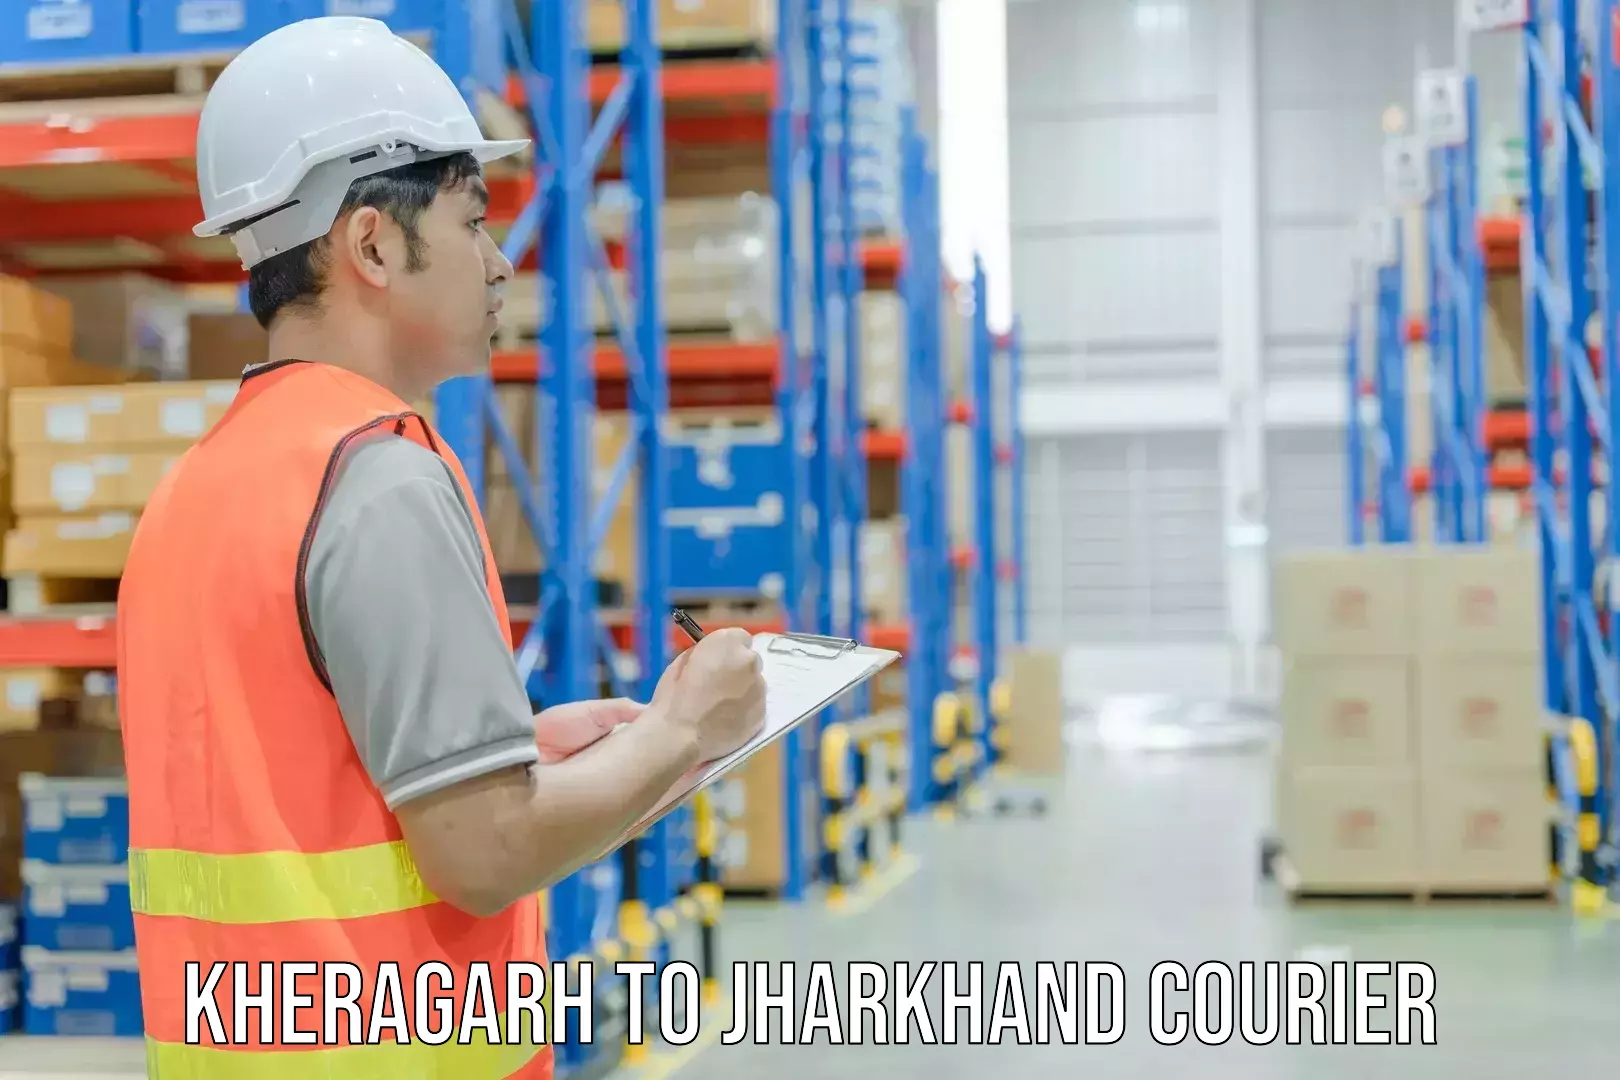 Efficient courier operations Kheragarh to Garhwa